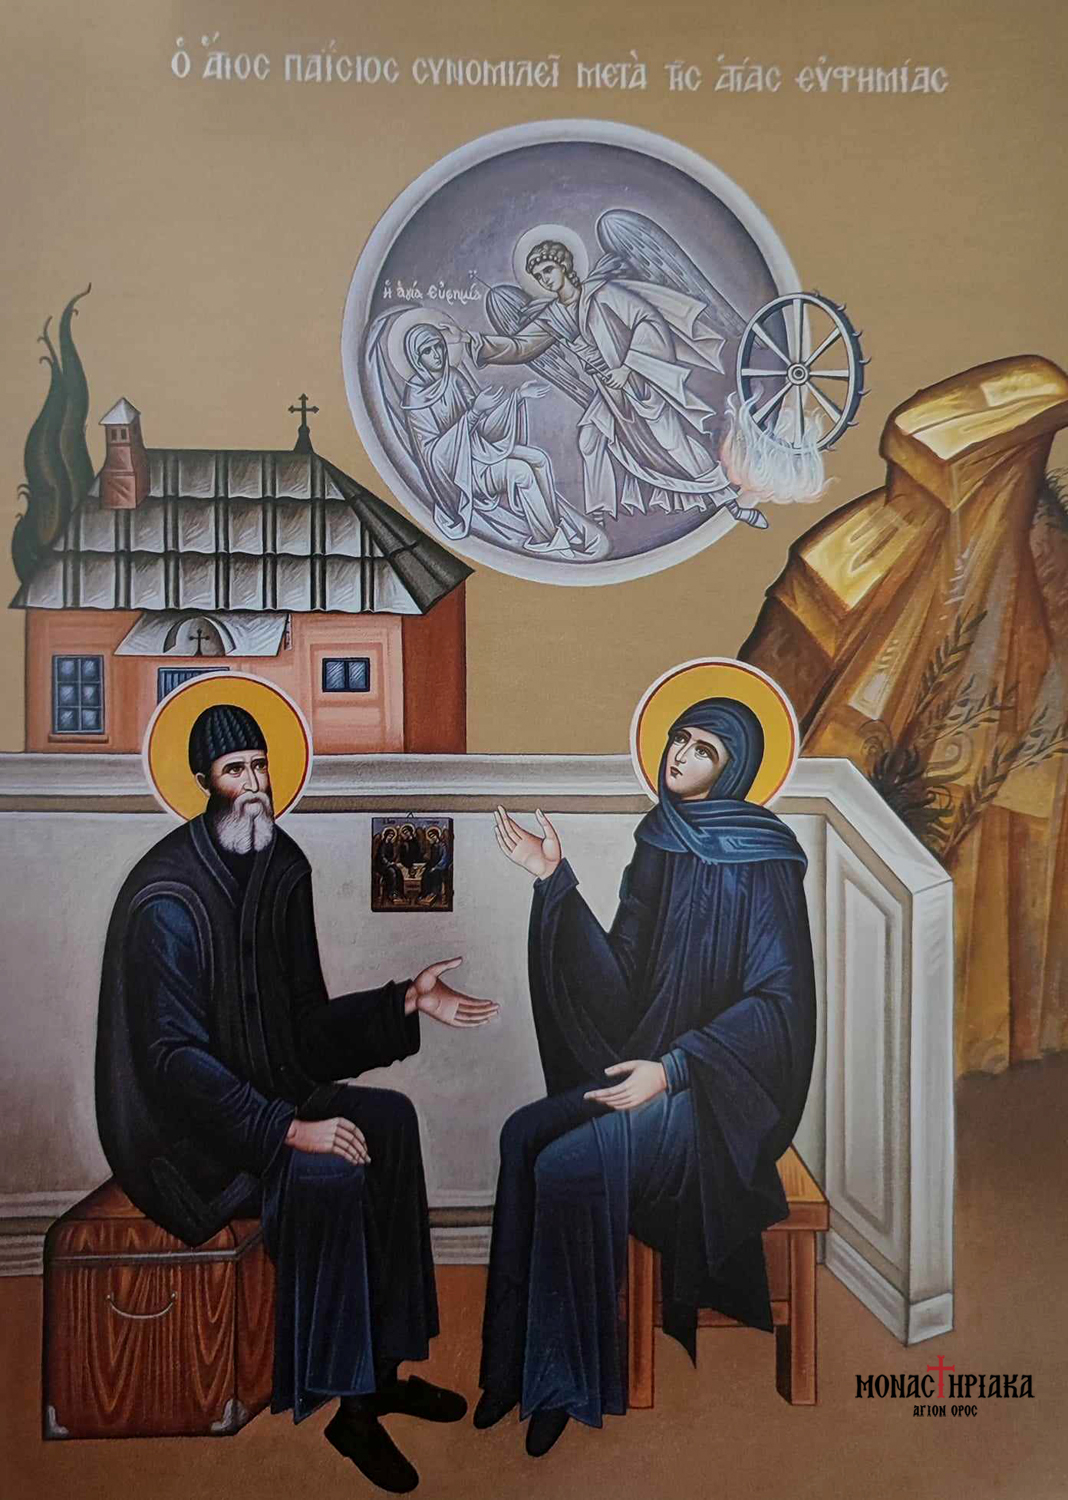 Άγιος Παΐσιος ο Αγιορείτης - Saint Paisios of Mount Athos with Saint Euphemia